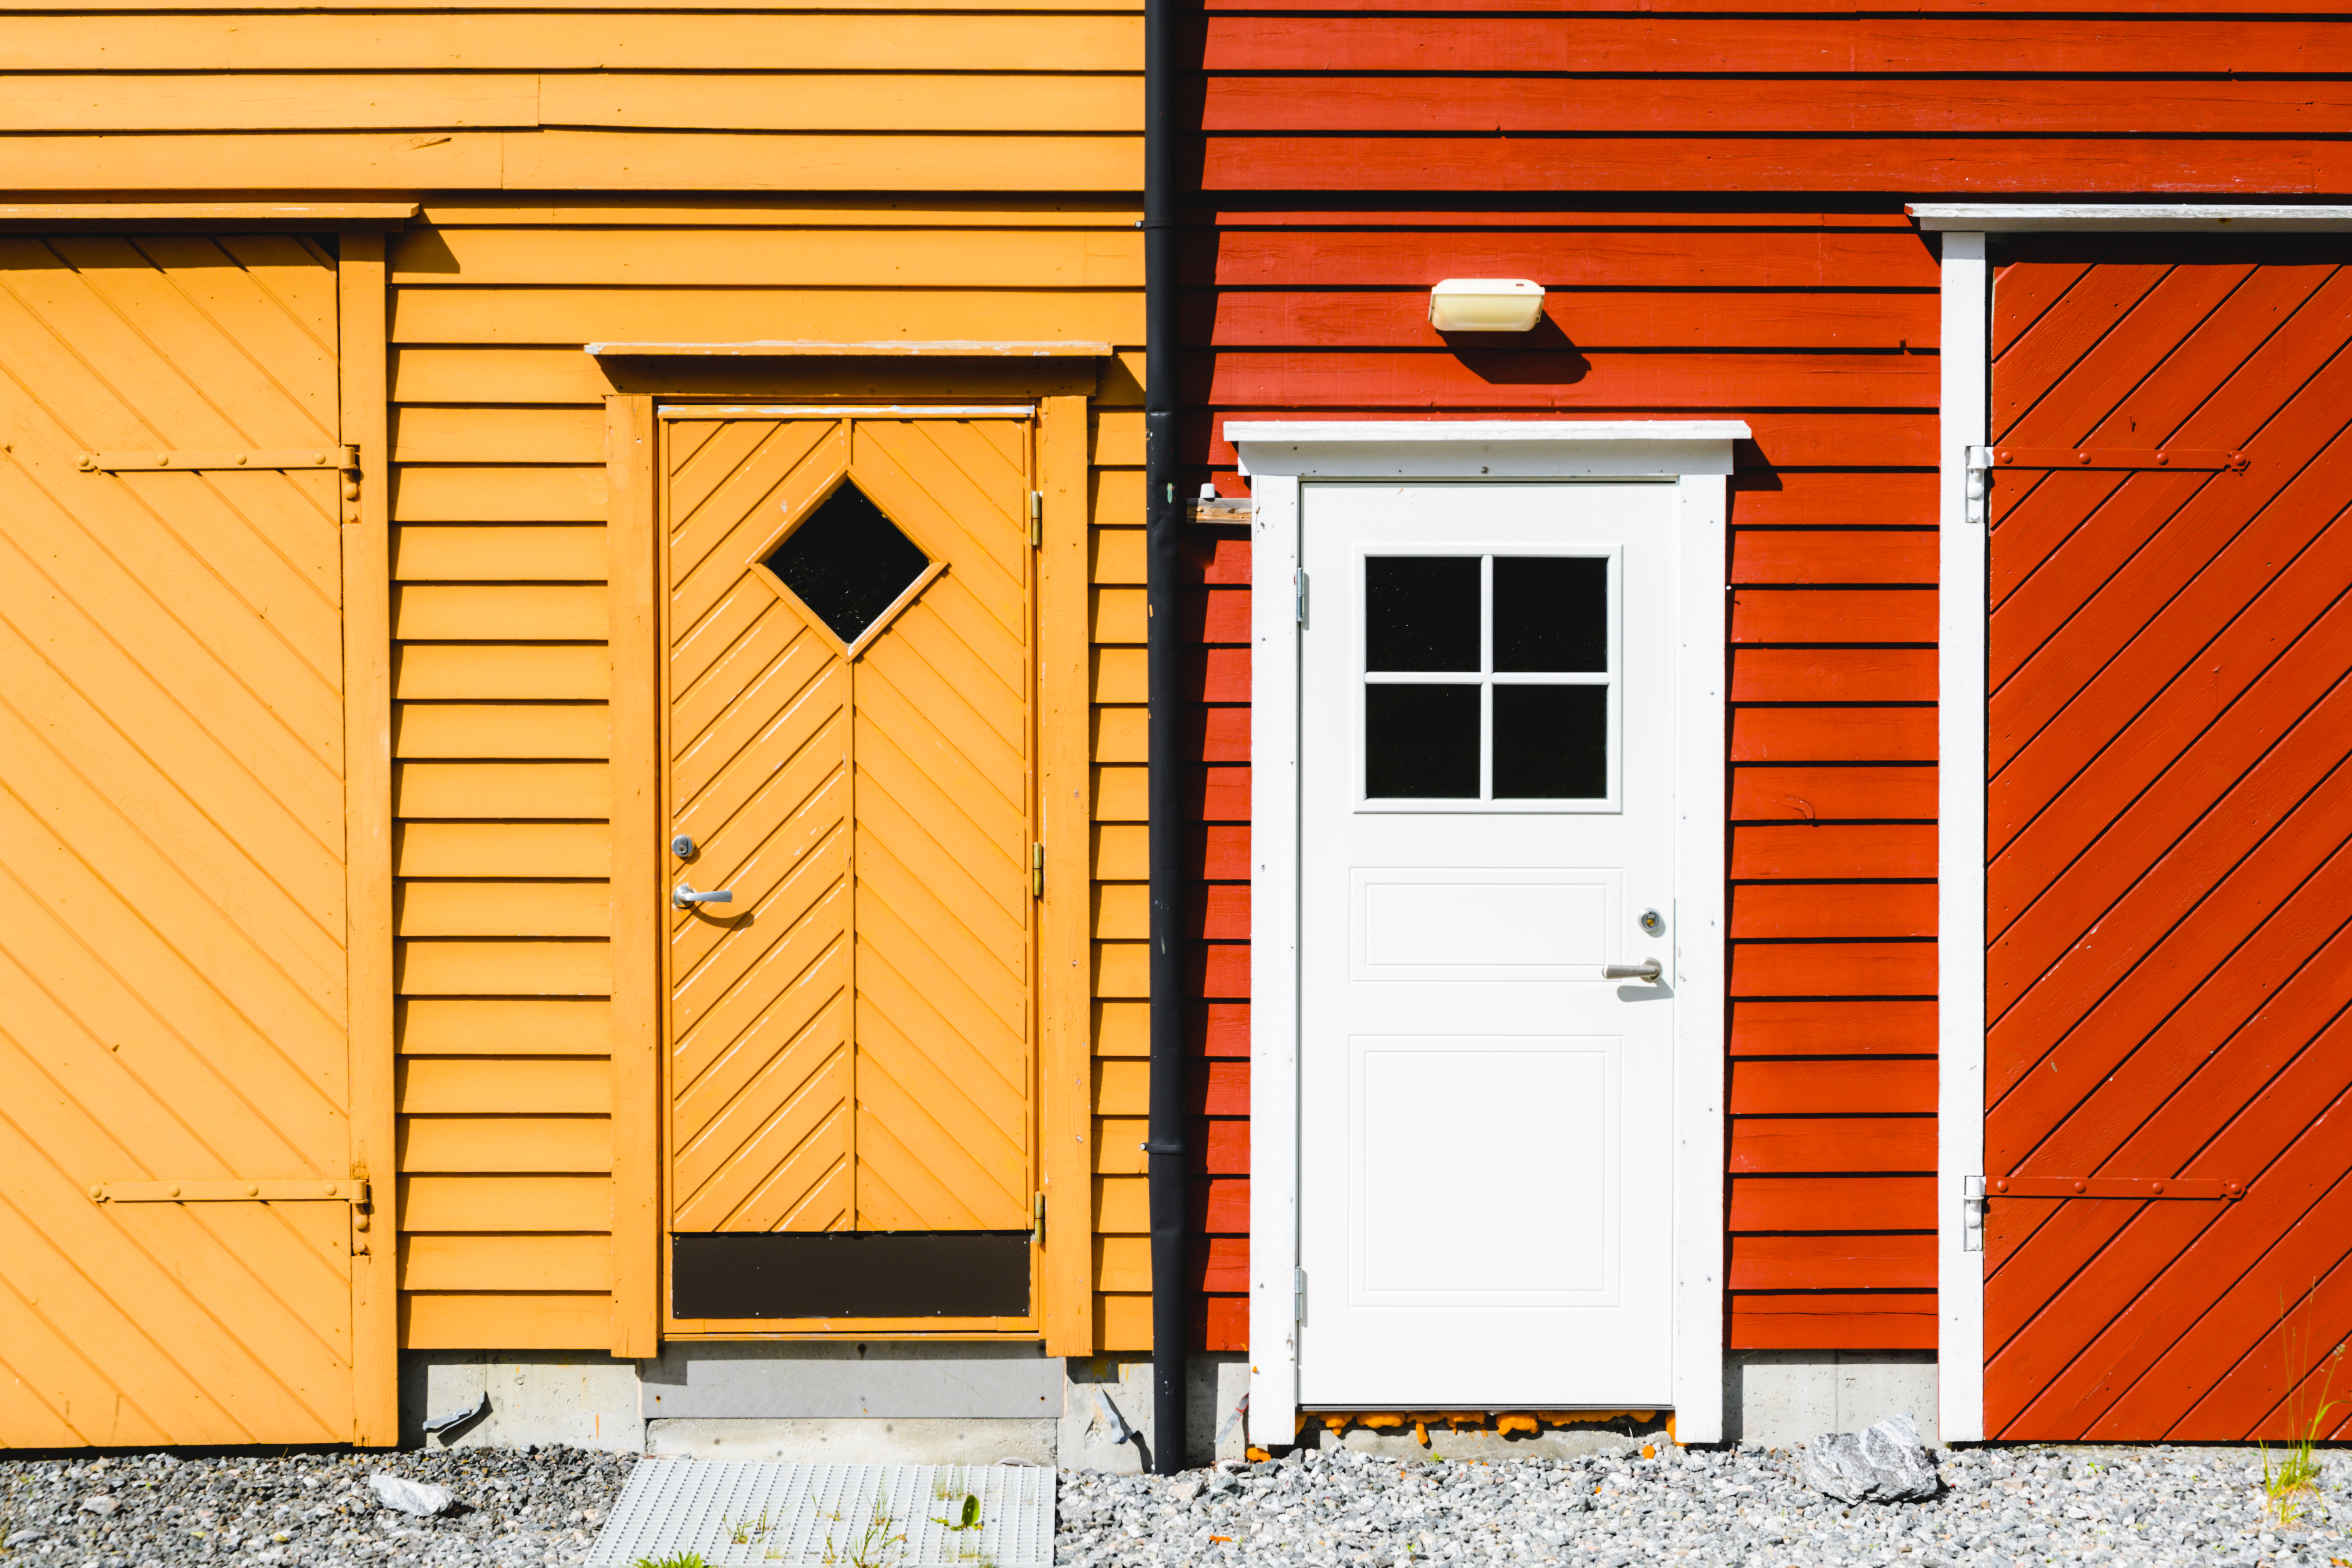 Türen von zwei benachbarten Häusern | Quelle: Getty Images